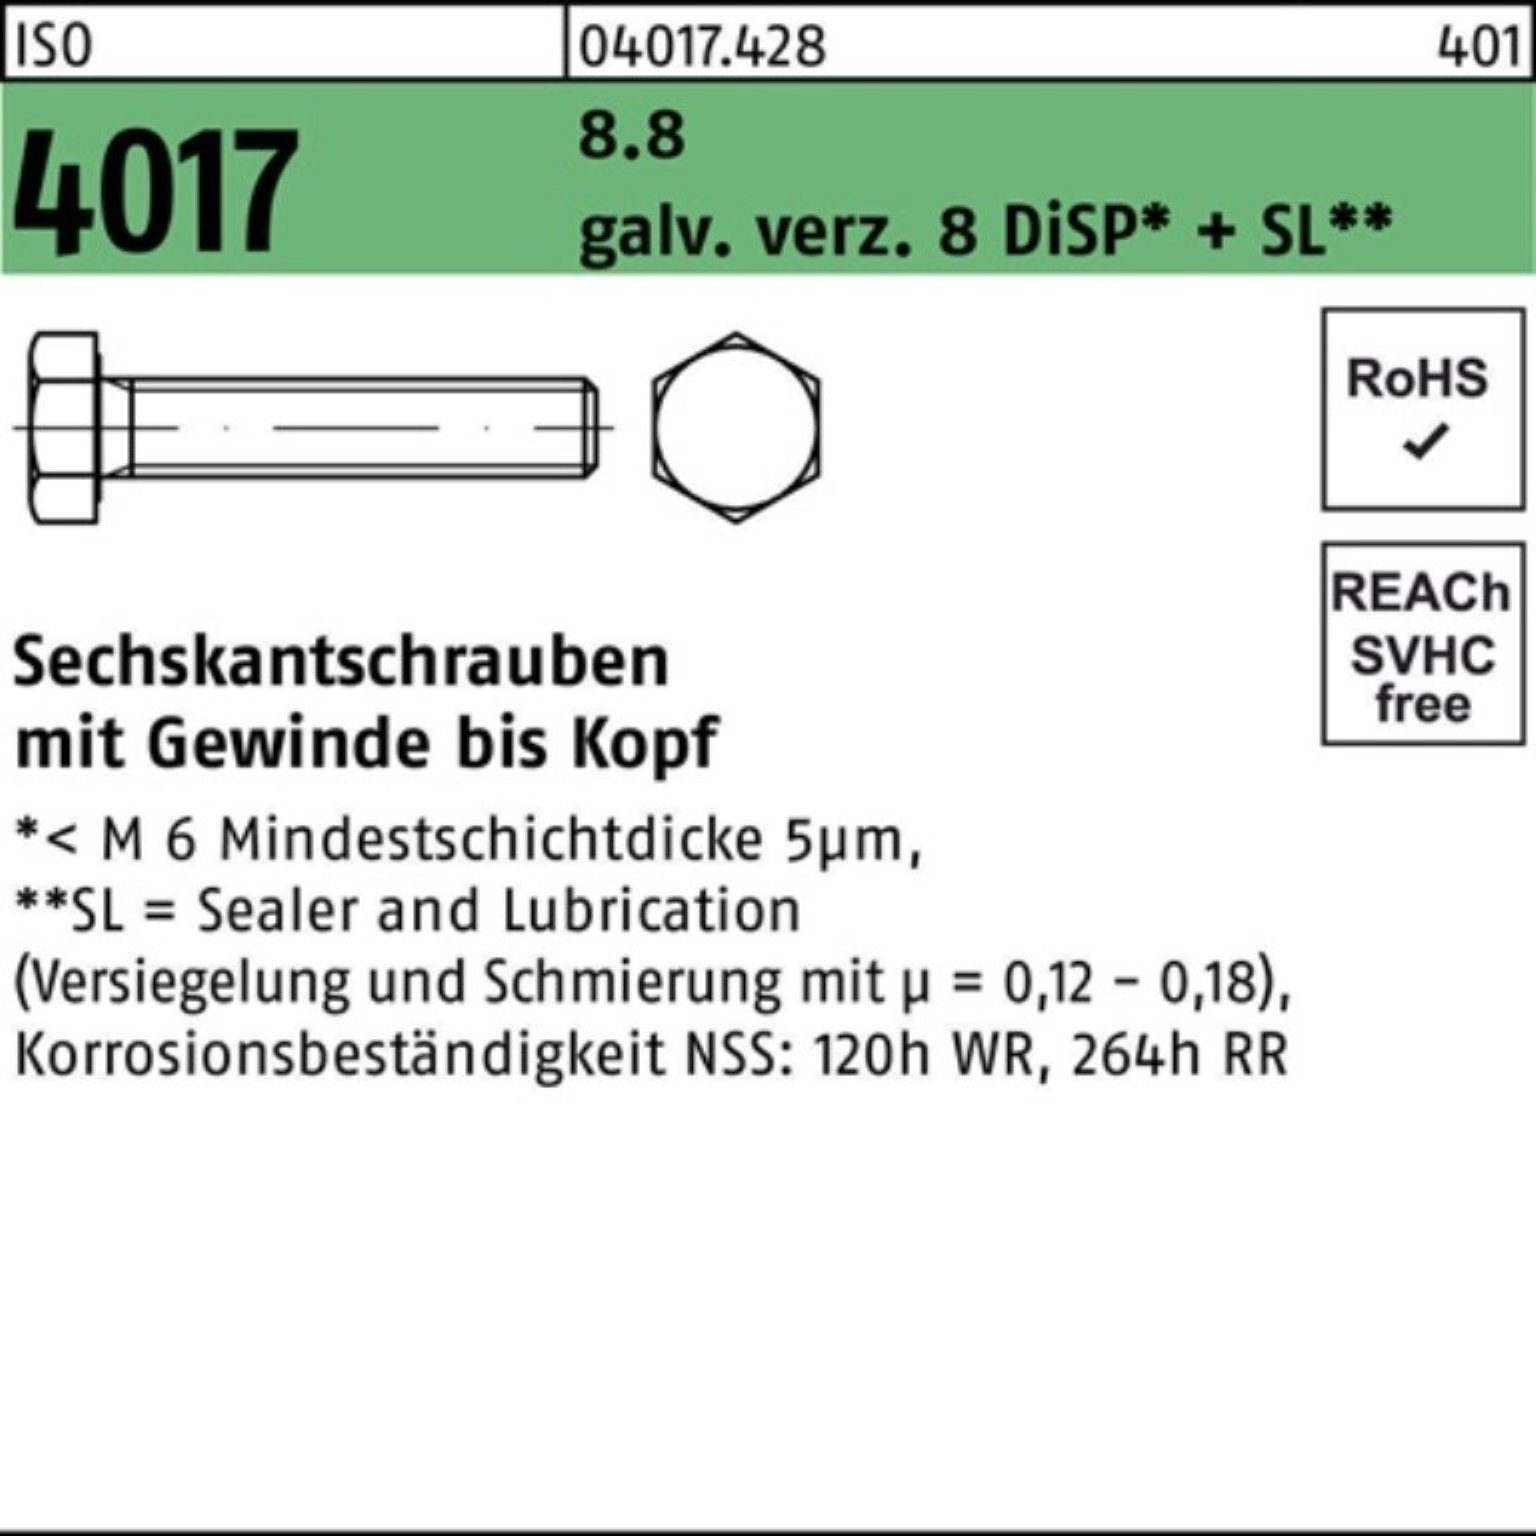 Bufab Sechskantschraube 100er Pack galv.verz. ISO 8.8 M14x VG 4017 Sechskantschraube 8 45 DiSP